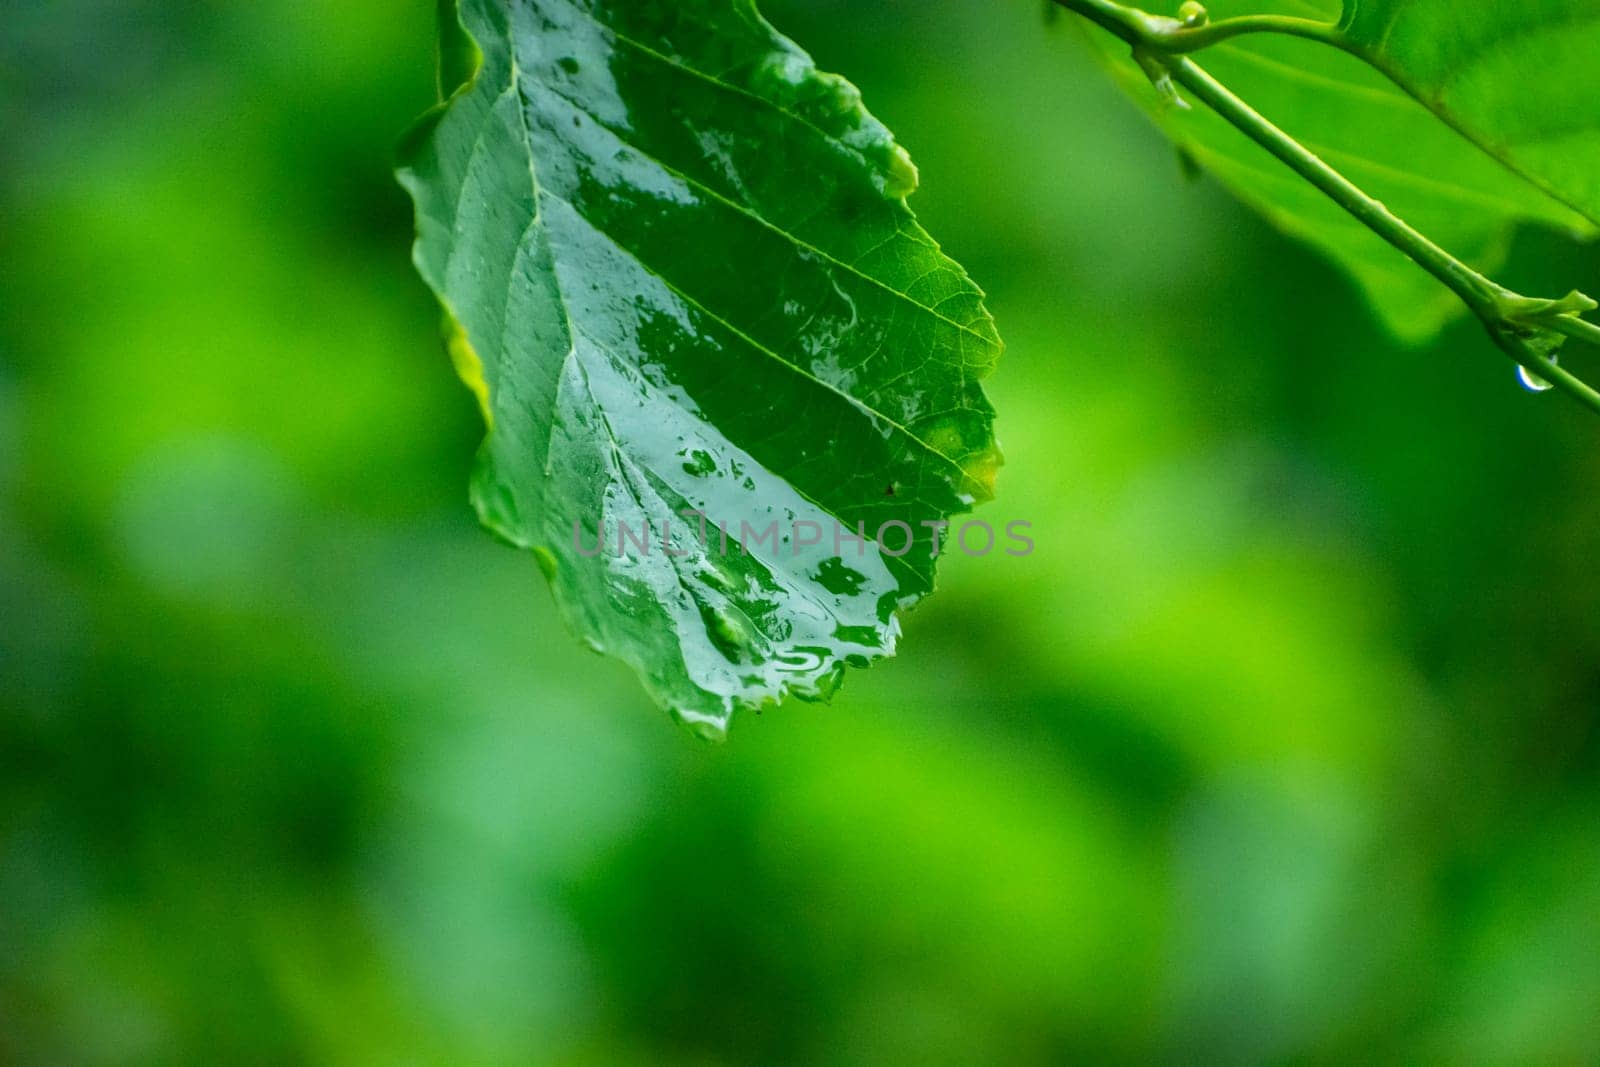 Wet green alder leaf on blurred background by darekb22